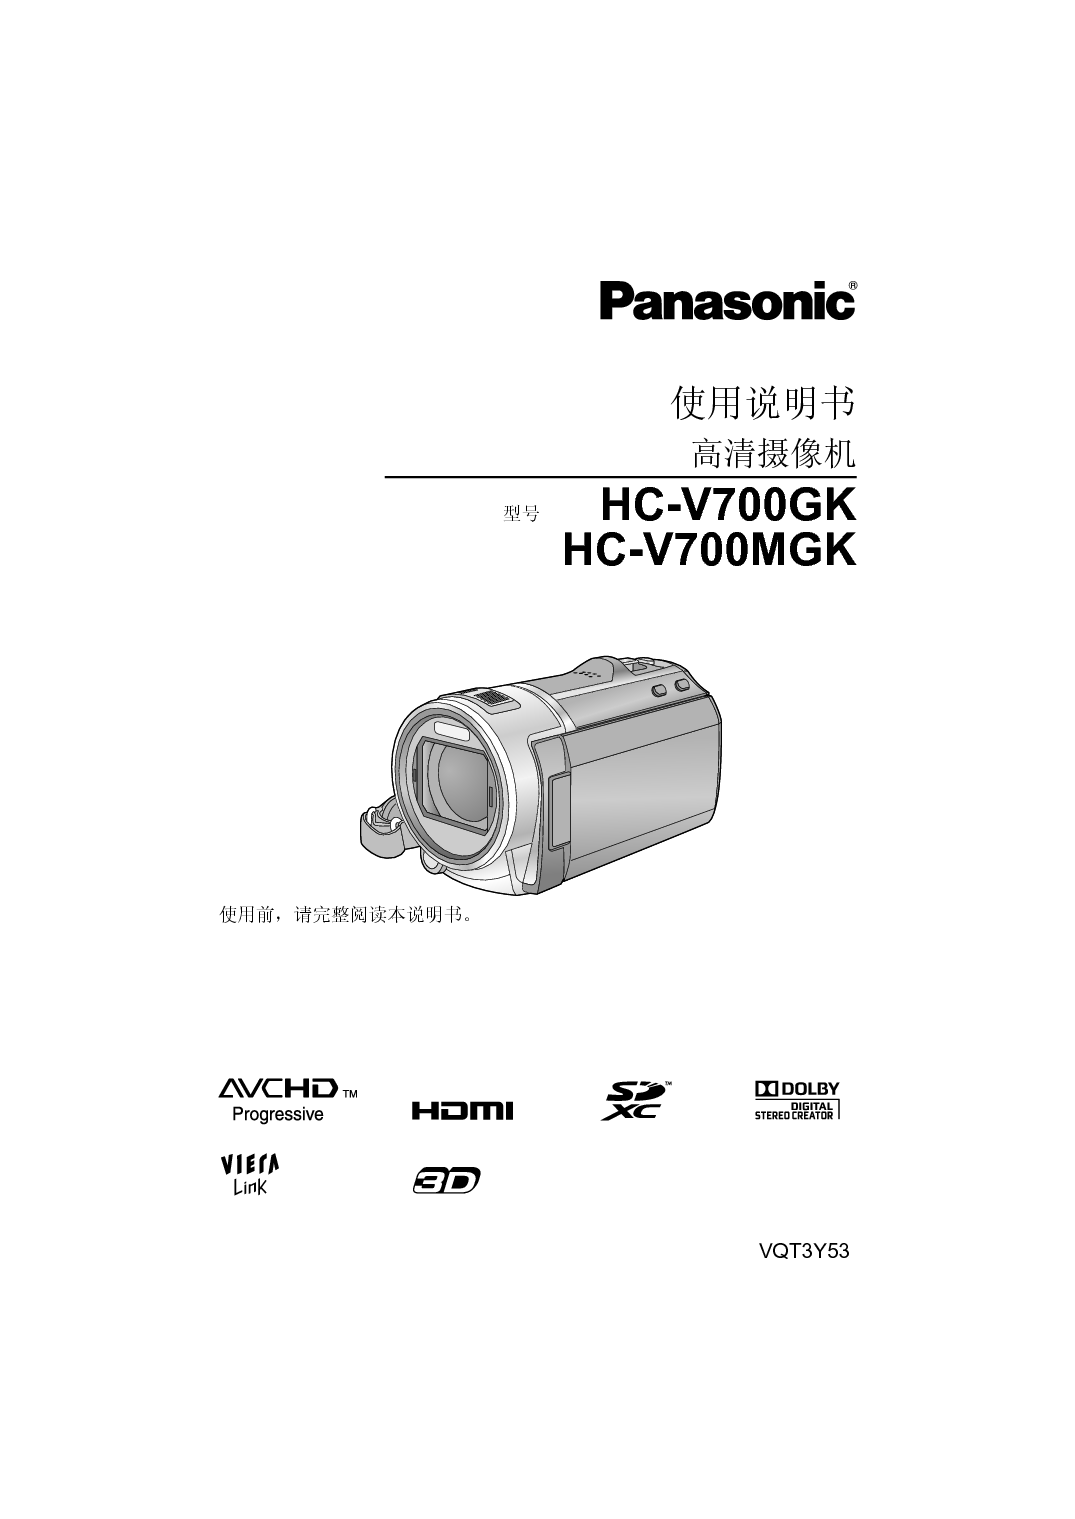 松下 Panasonic HC-V700GK 说明书 封面